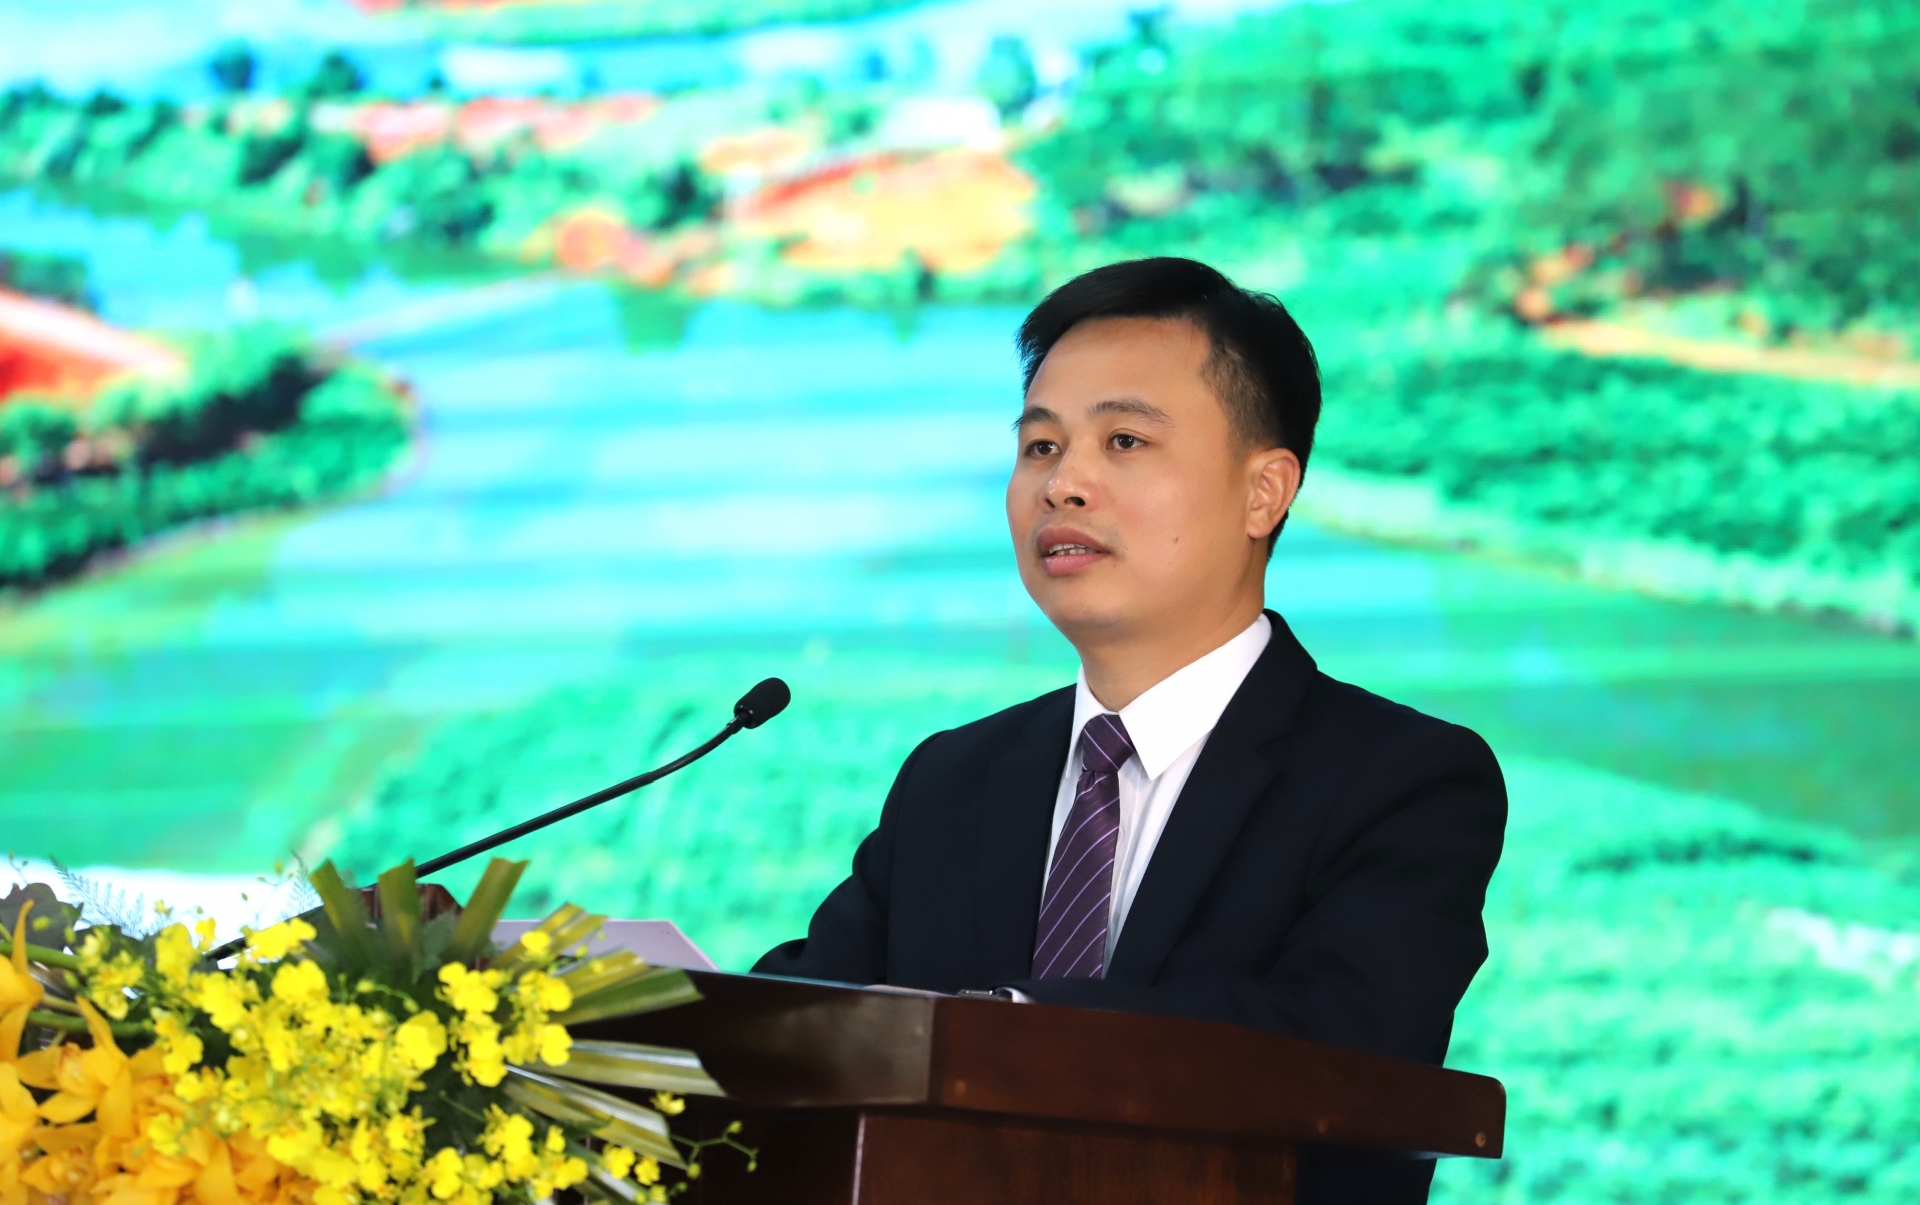 Đồng chí Nguyễn Văn Phòng - Giám đốc Công ty Nhôm Lâm Đồng báo cáo kết quả hoạt động sản xuất, kinh doanh tại hội nghị